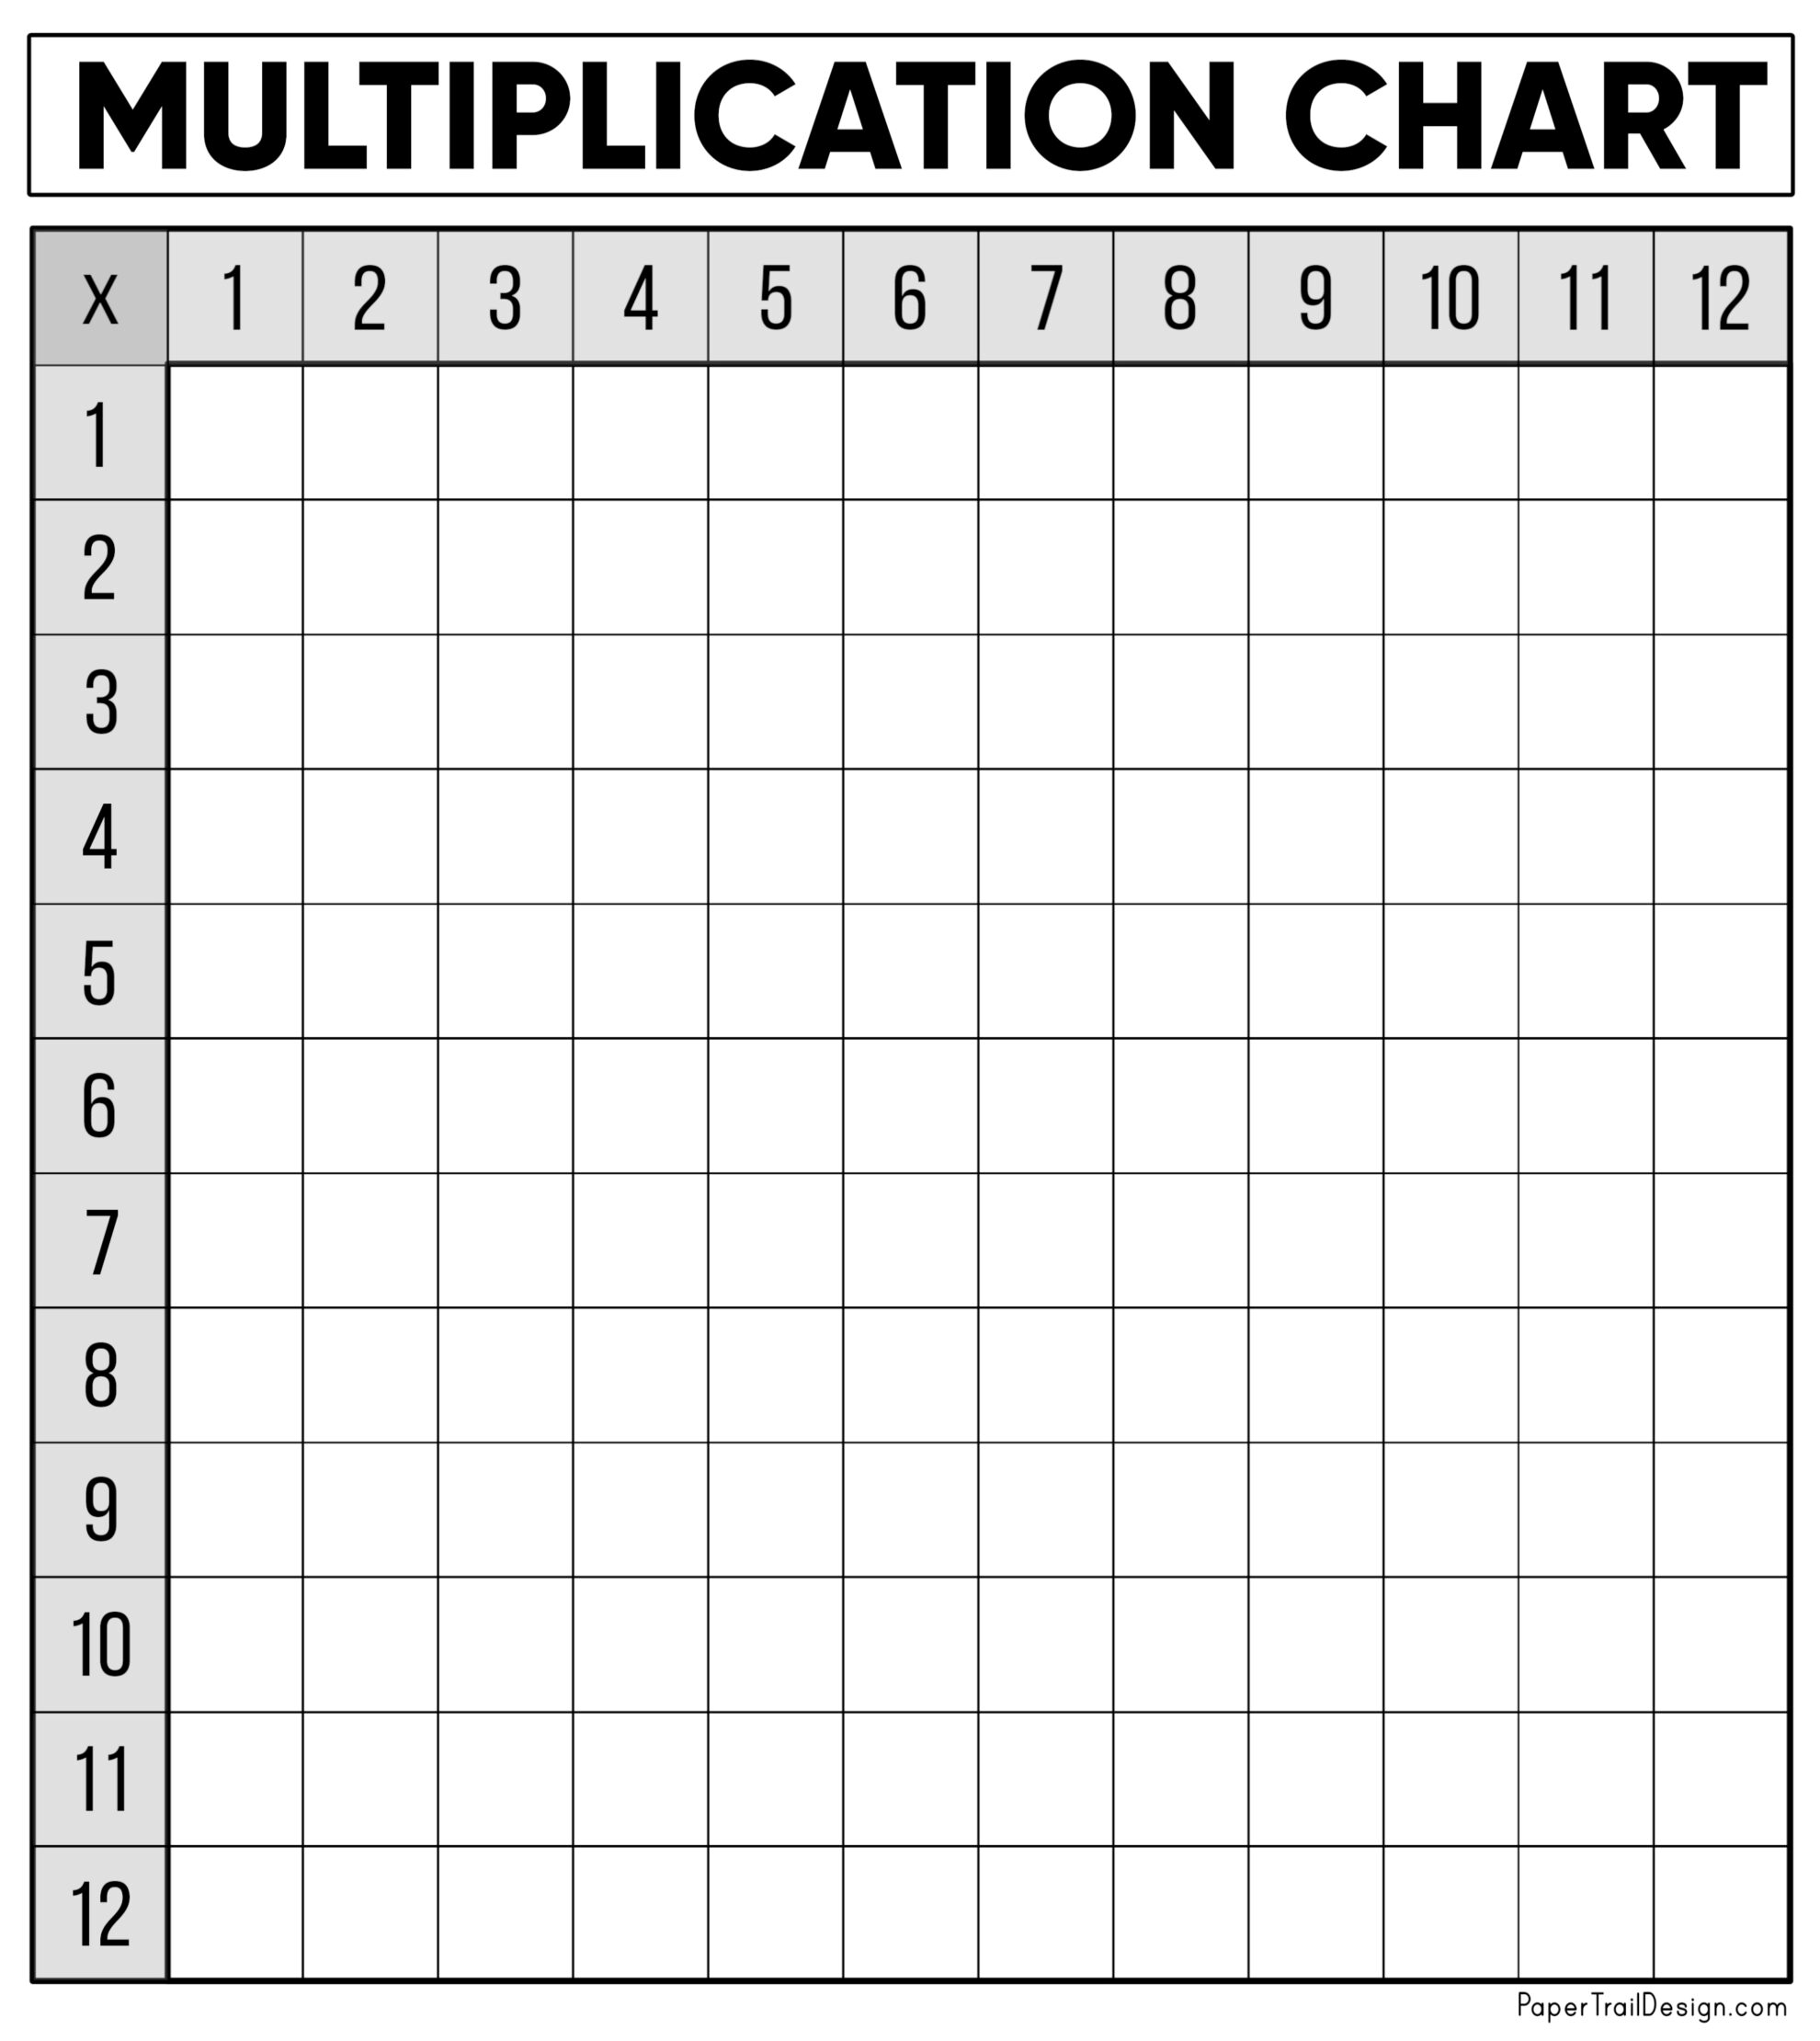 blank-multiplication-chart-printable-printable-world-holiday